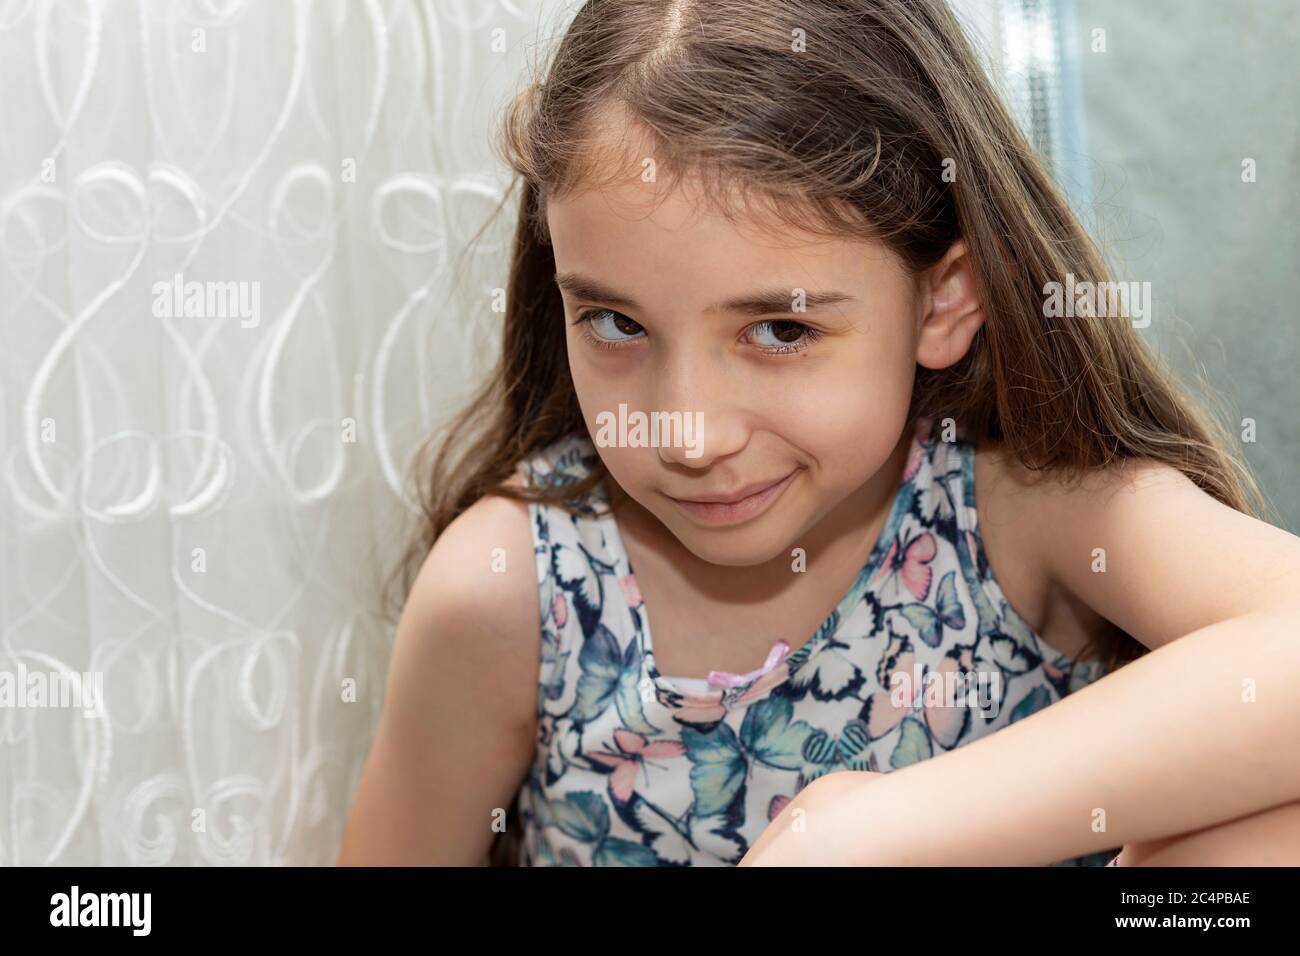 Una bambina che guarda sospettosa. La ragazza bionda con i capelli lunghi prende uno scettico e sospetto-guardando davanti alla tenda. Foto Stock